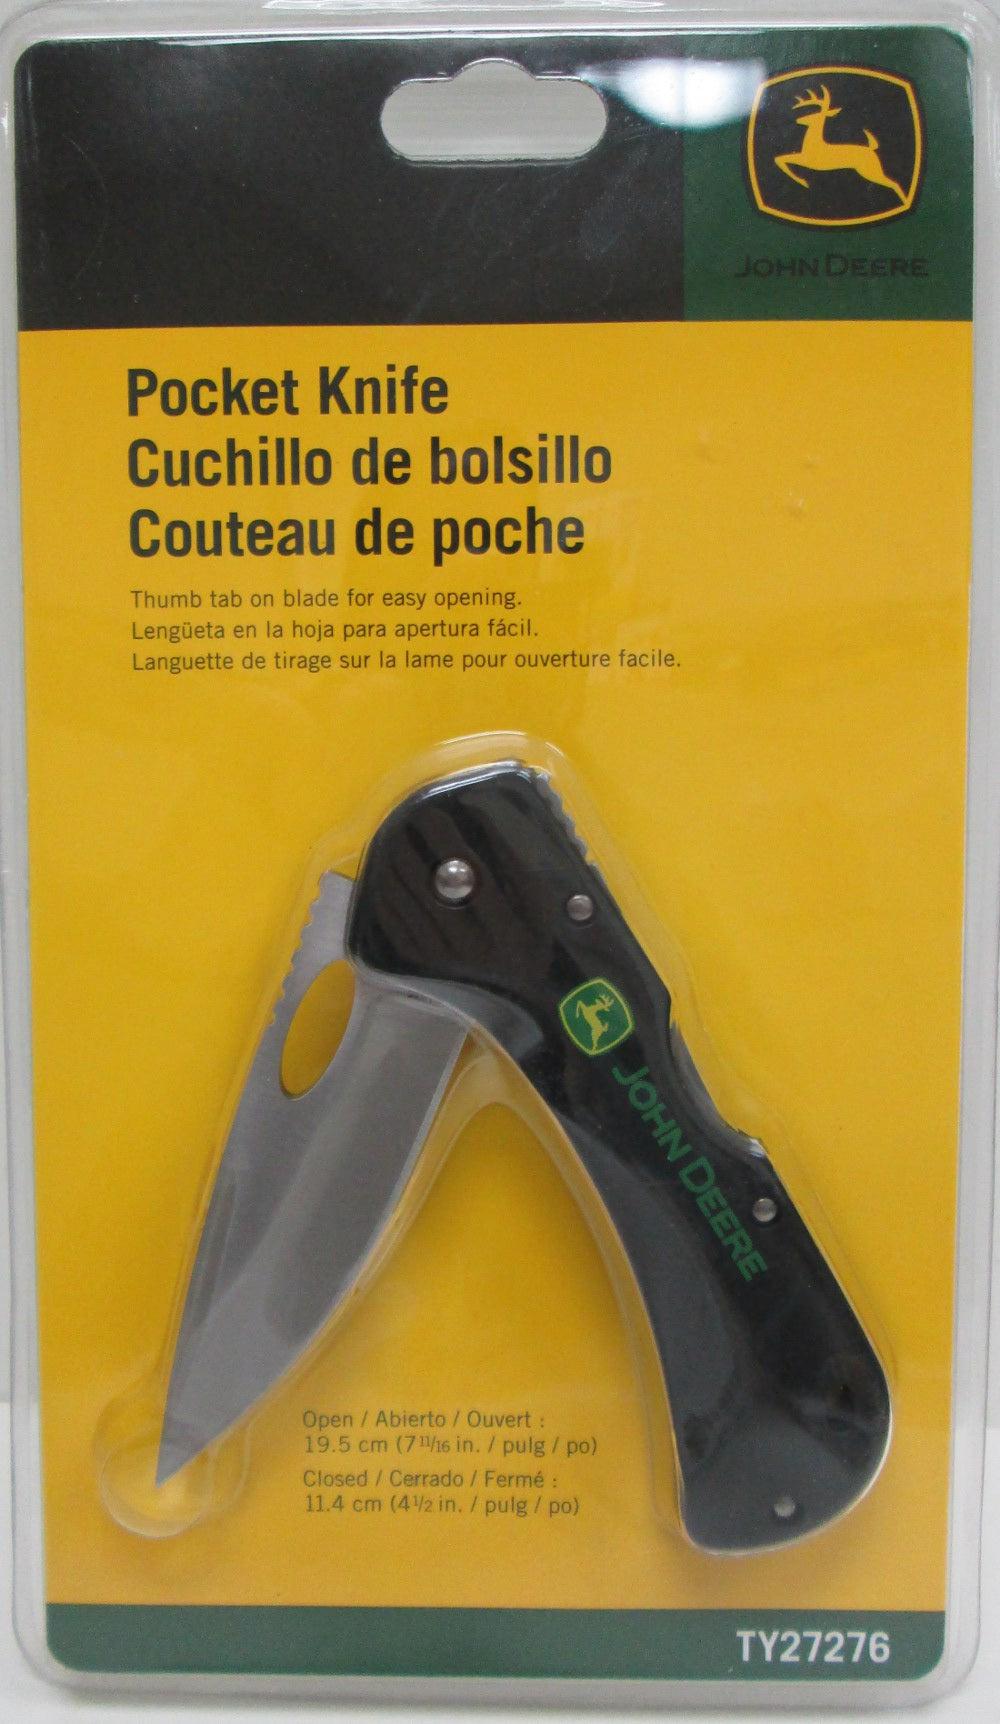 John Deere Pocket Knife - TY27276